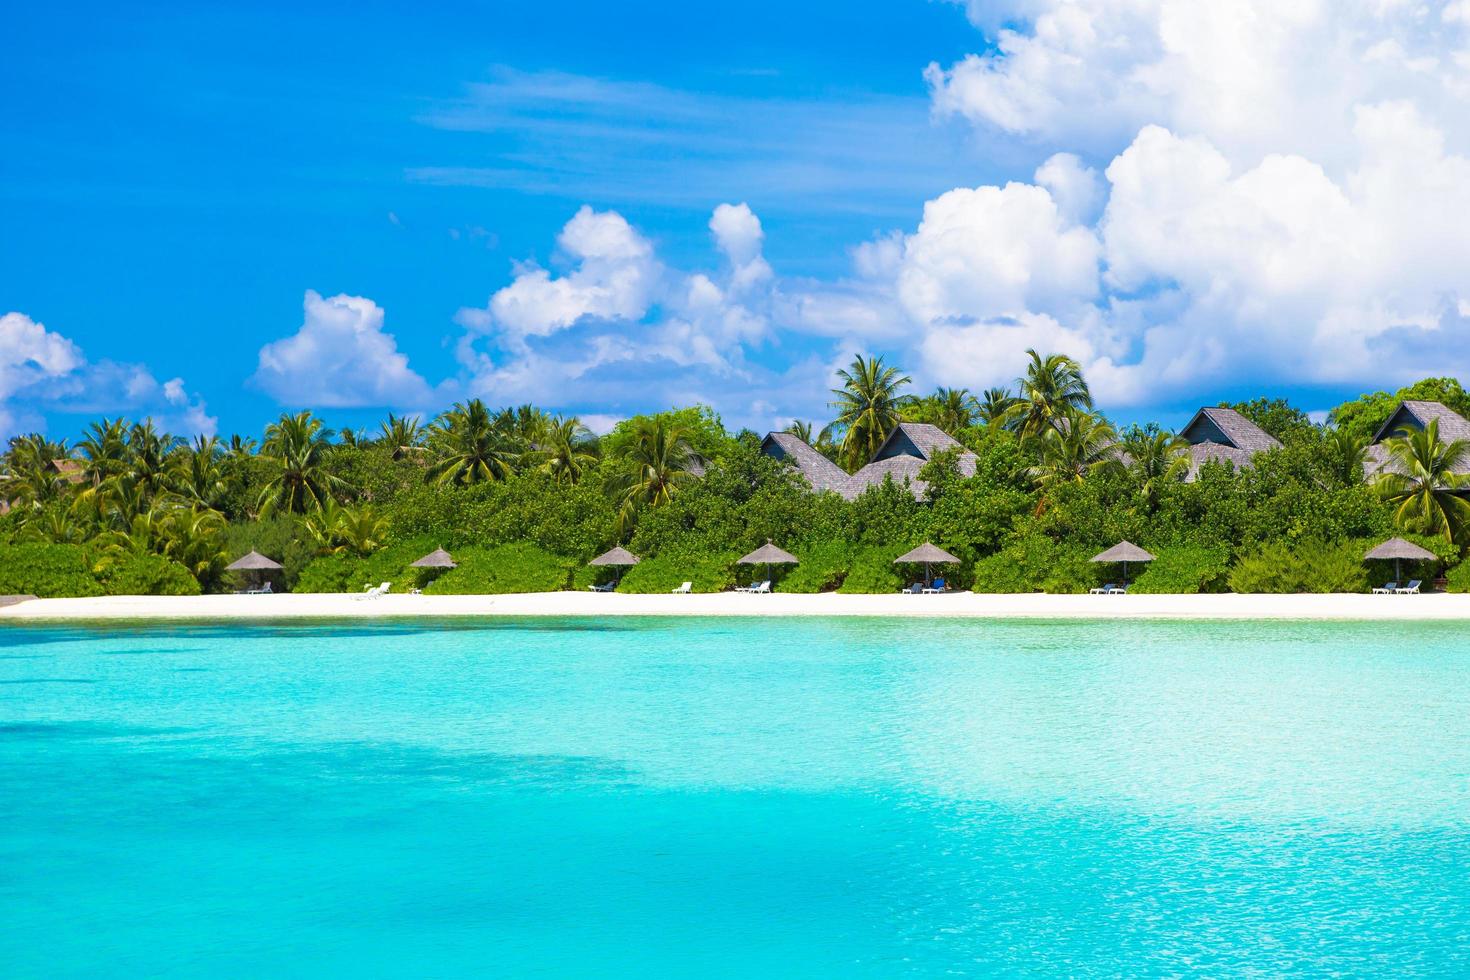 maldivas, sul da ásia, 2020 - resort em uma ilha tropical foto